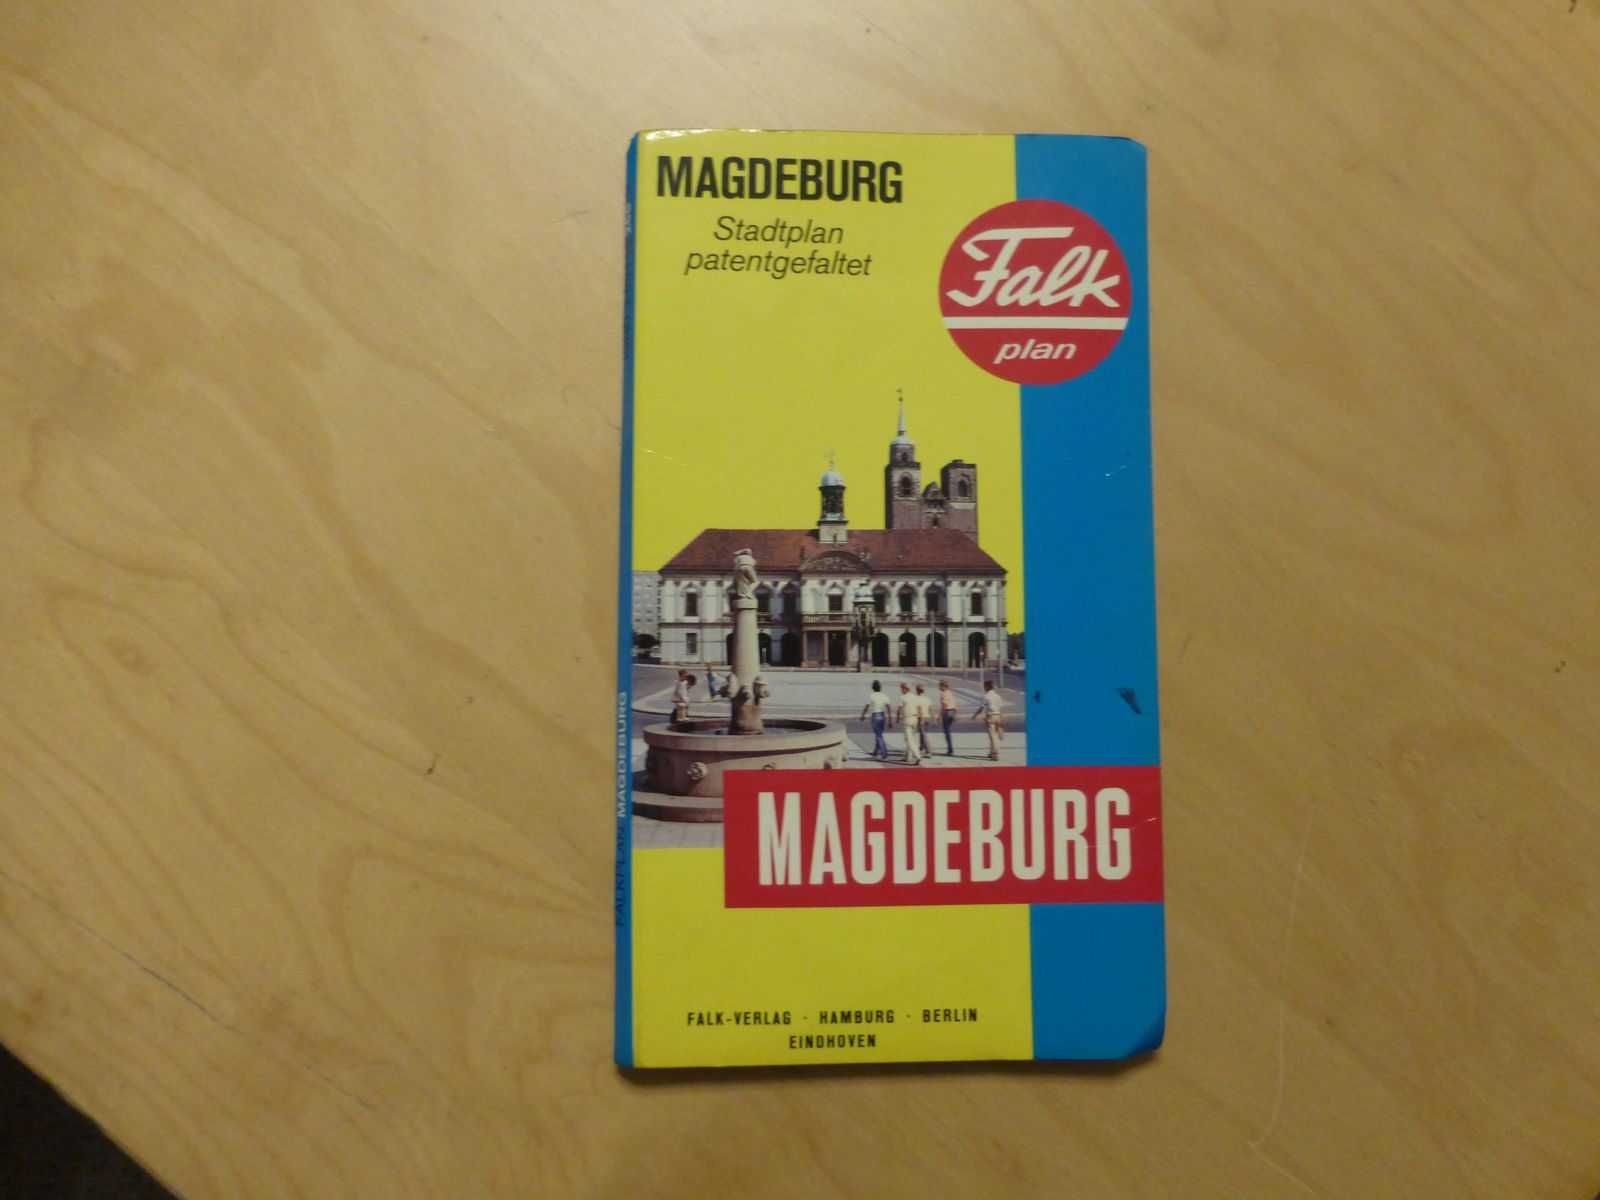 Falk plan Magdeburg plan miasta stadtplan 1991/92